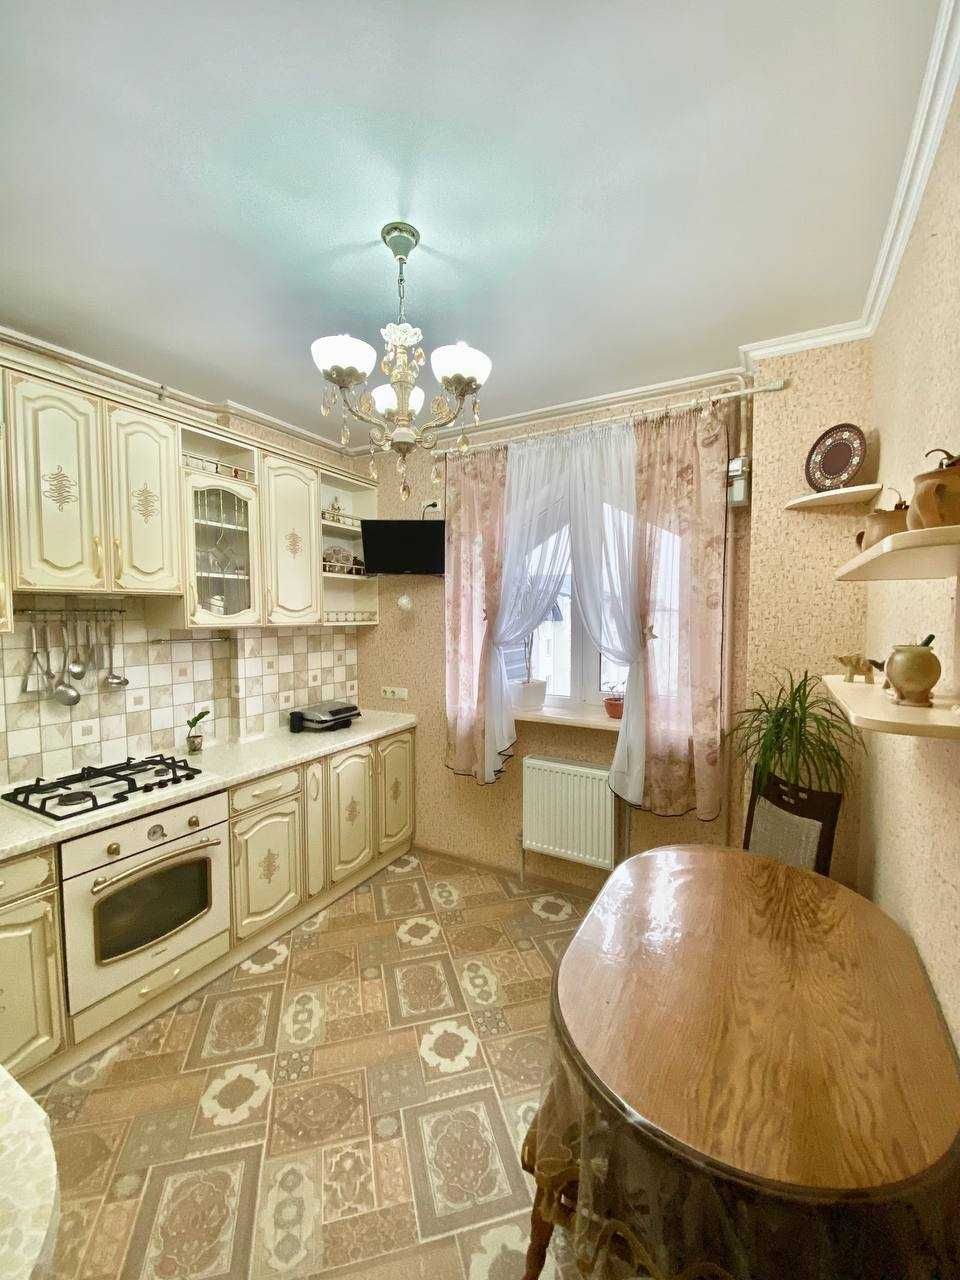 Продам двухкомнатную квартиру в пригороде Черноморск.